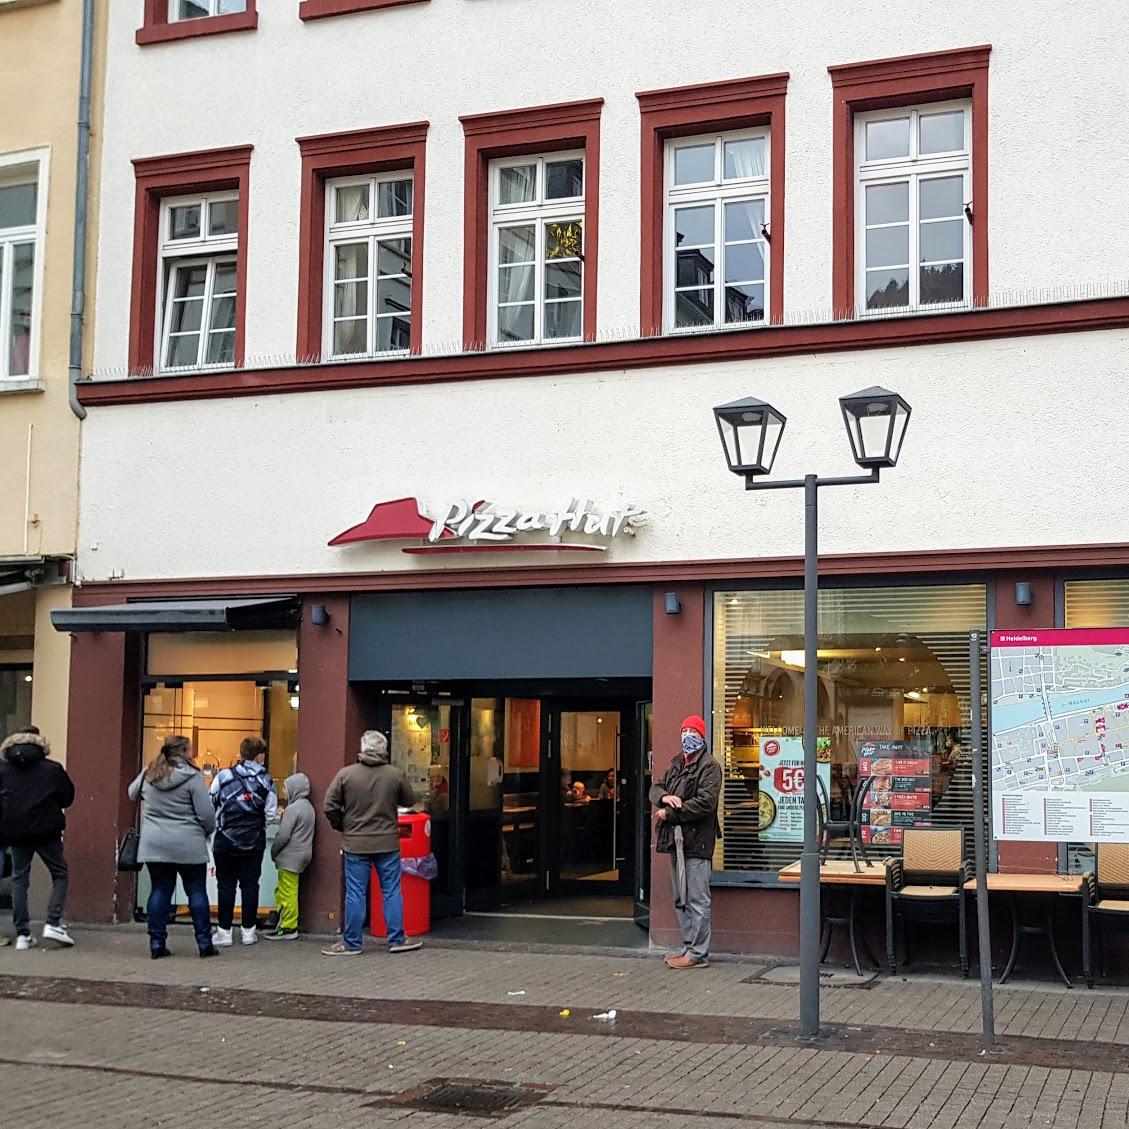 Restaurant "Pizza Hut" in Heidelberg